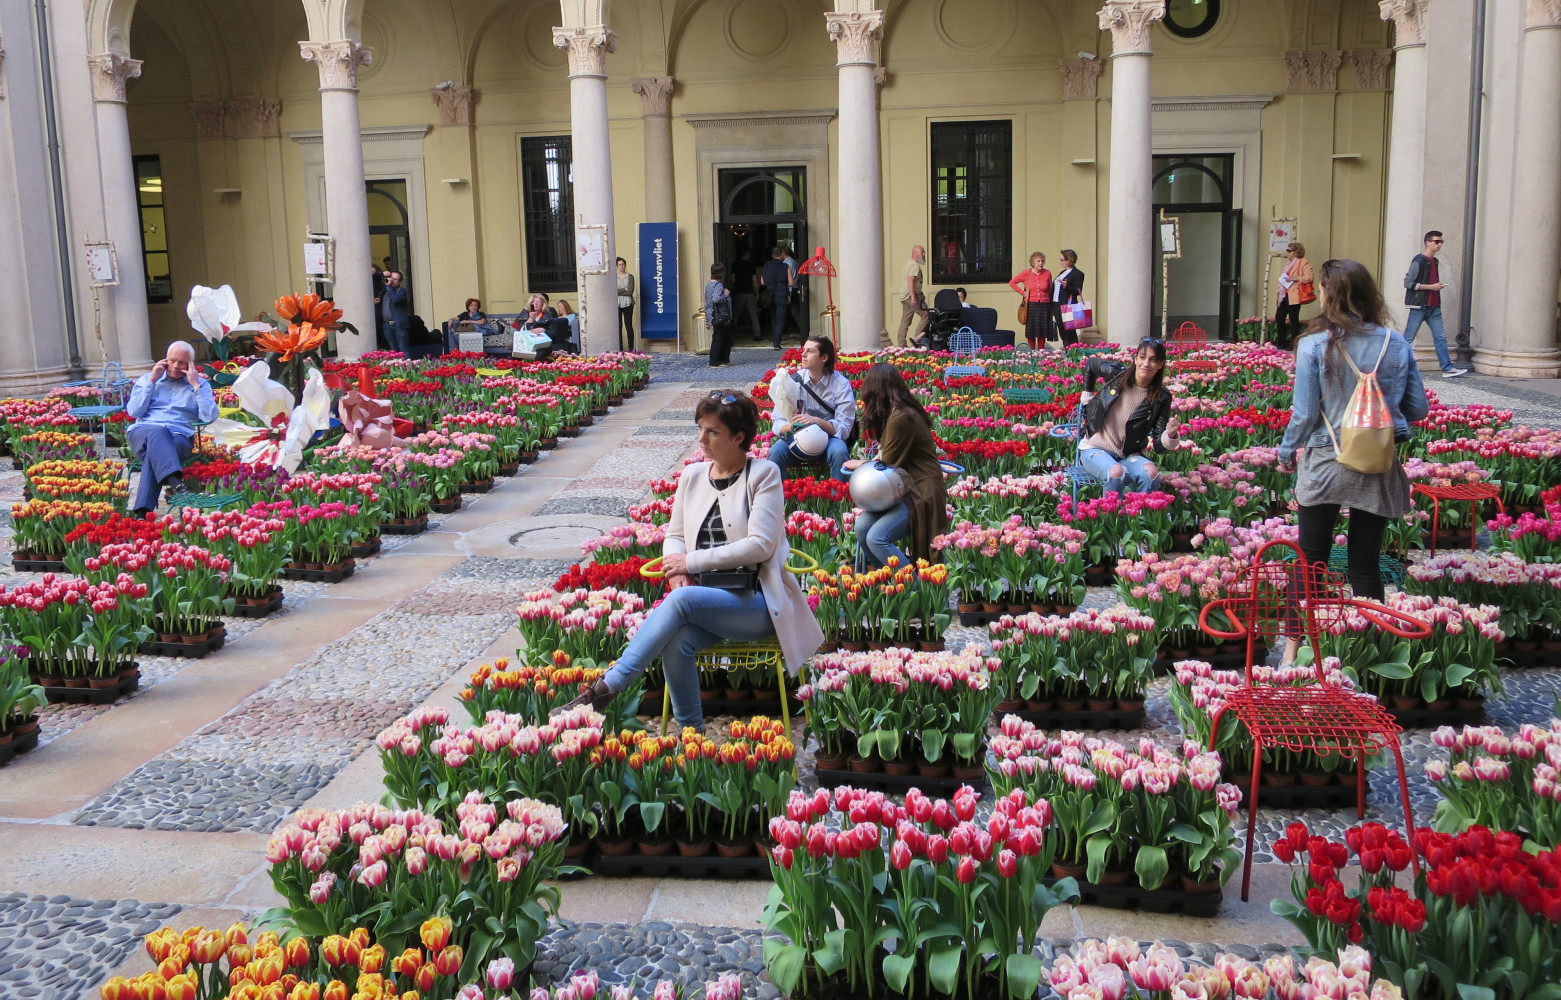 Dans la cour néo-renaissance, un parterre de tulipes hollandaises incitait les visiteurs à faire des selfies, assis...